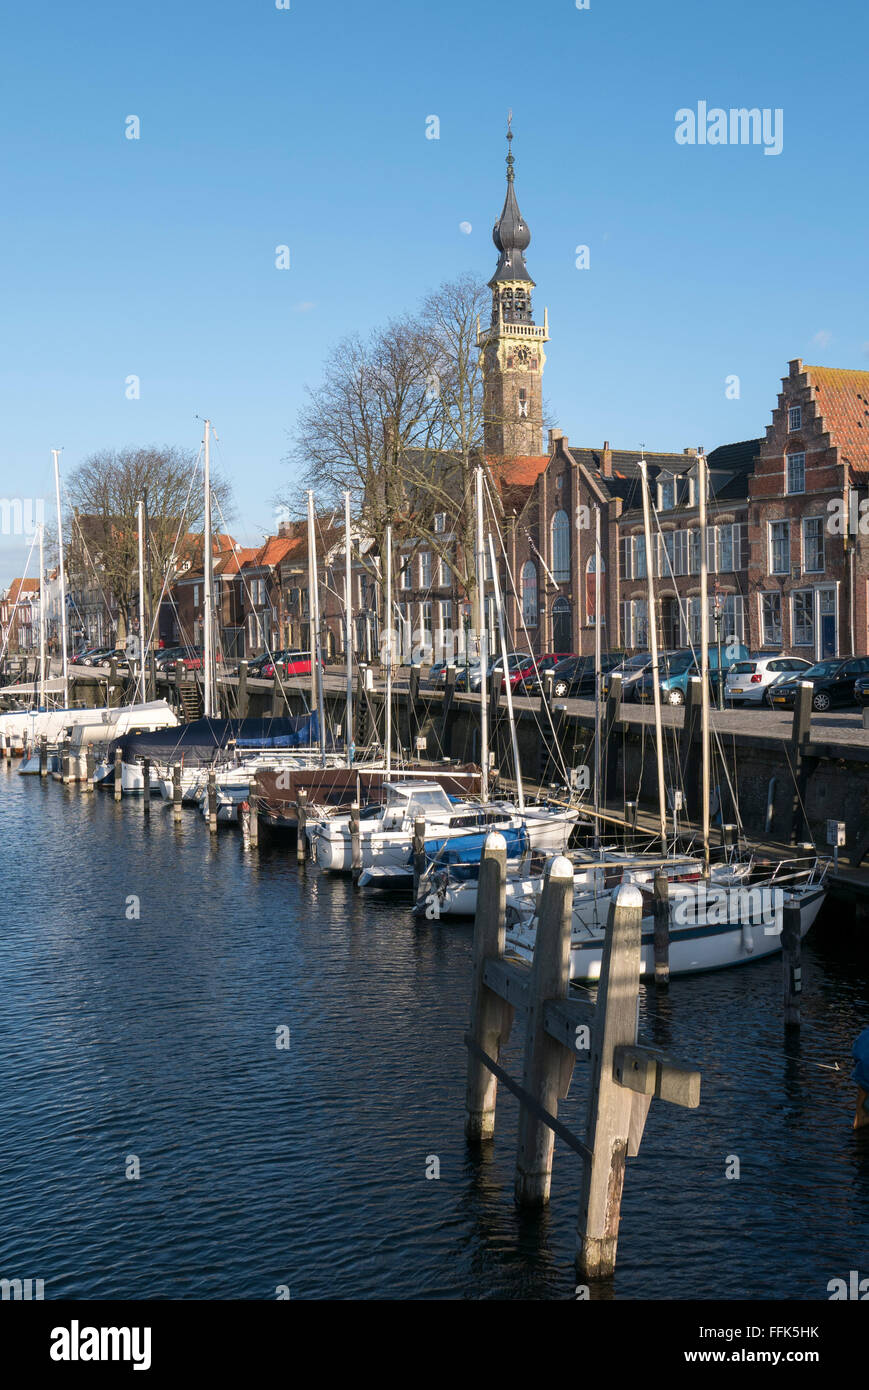 Hafen von Veere, Provinz Seeland, Niederlande | Hafen von Veere, Zeeland, Niederlande Stockfoto